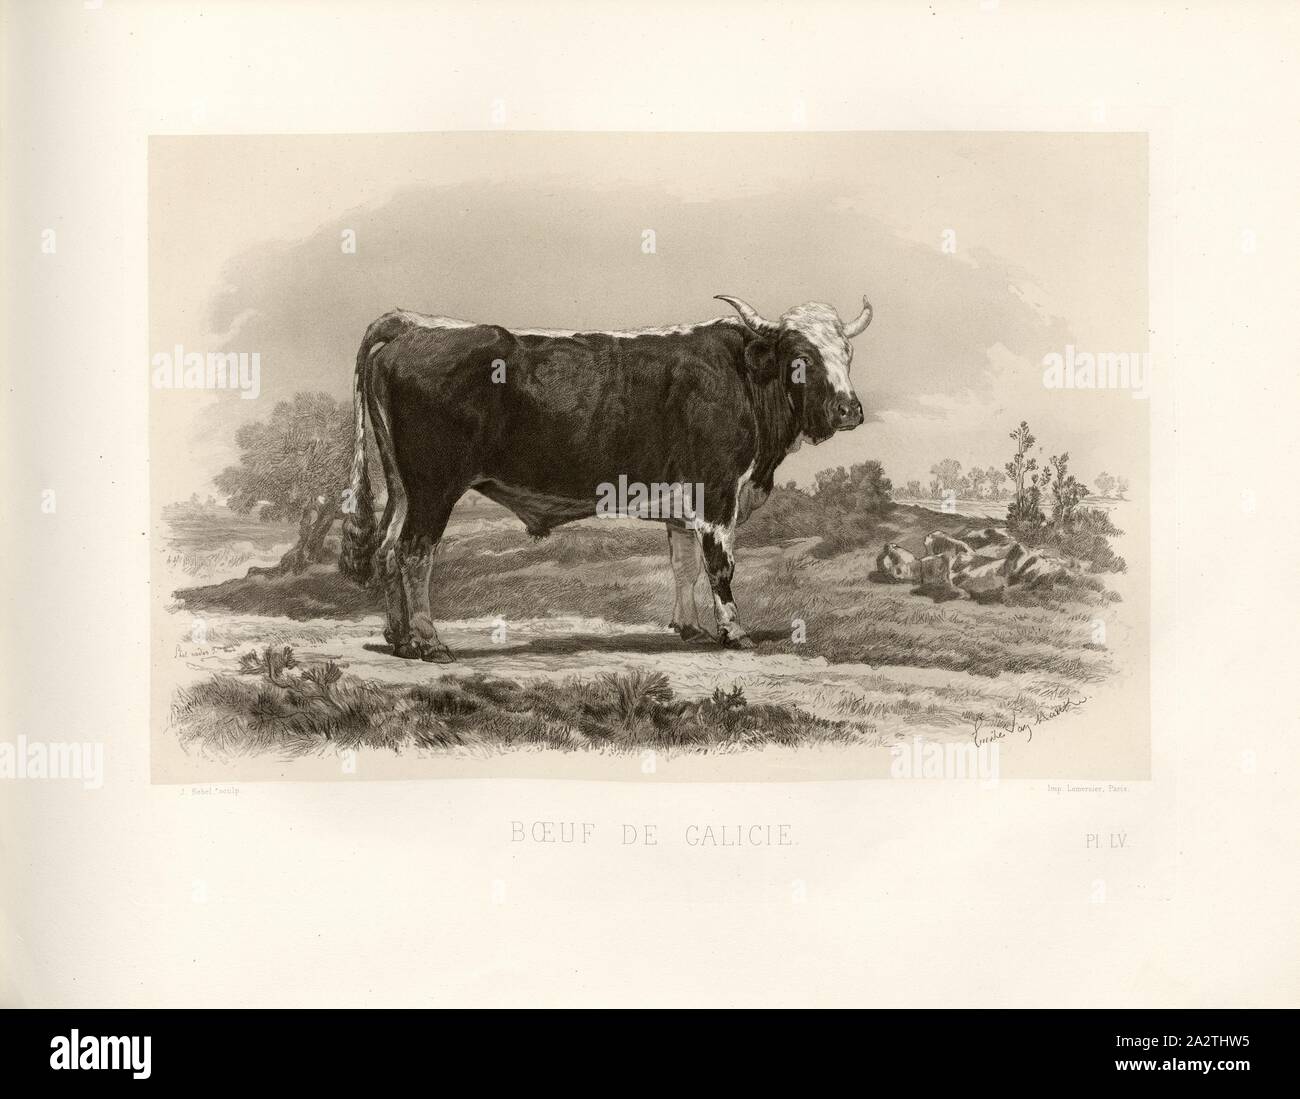 Beef of Galicia 1, Austrian cattle breed, ox, signed: Phot., Nadar jne; Emile Van Marcke; J. Rebel sculp, Pl. LV, p. 127, Tournachon, Adrien Alban (Phot.); Marcke, Emile van; Rebel, J. (sc.), Emile Baudement: Les races bovines au concours universel agricole de Paris en 1856: études zootechniques. Bd. 2. Paris: Imprimerie Impériale, MDCCCLXI [1861 Stock Photo